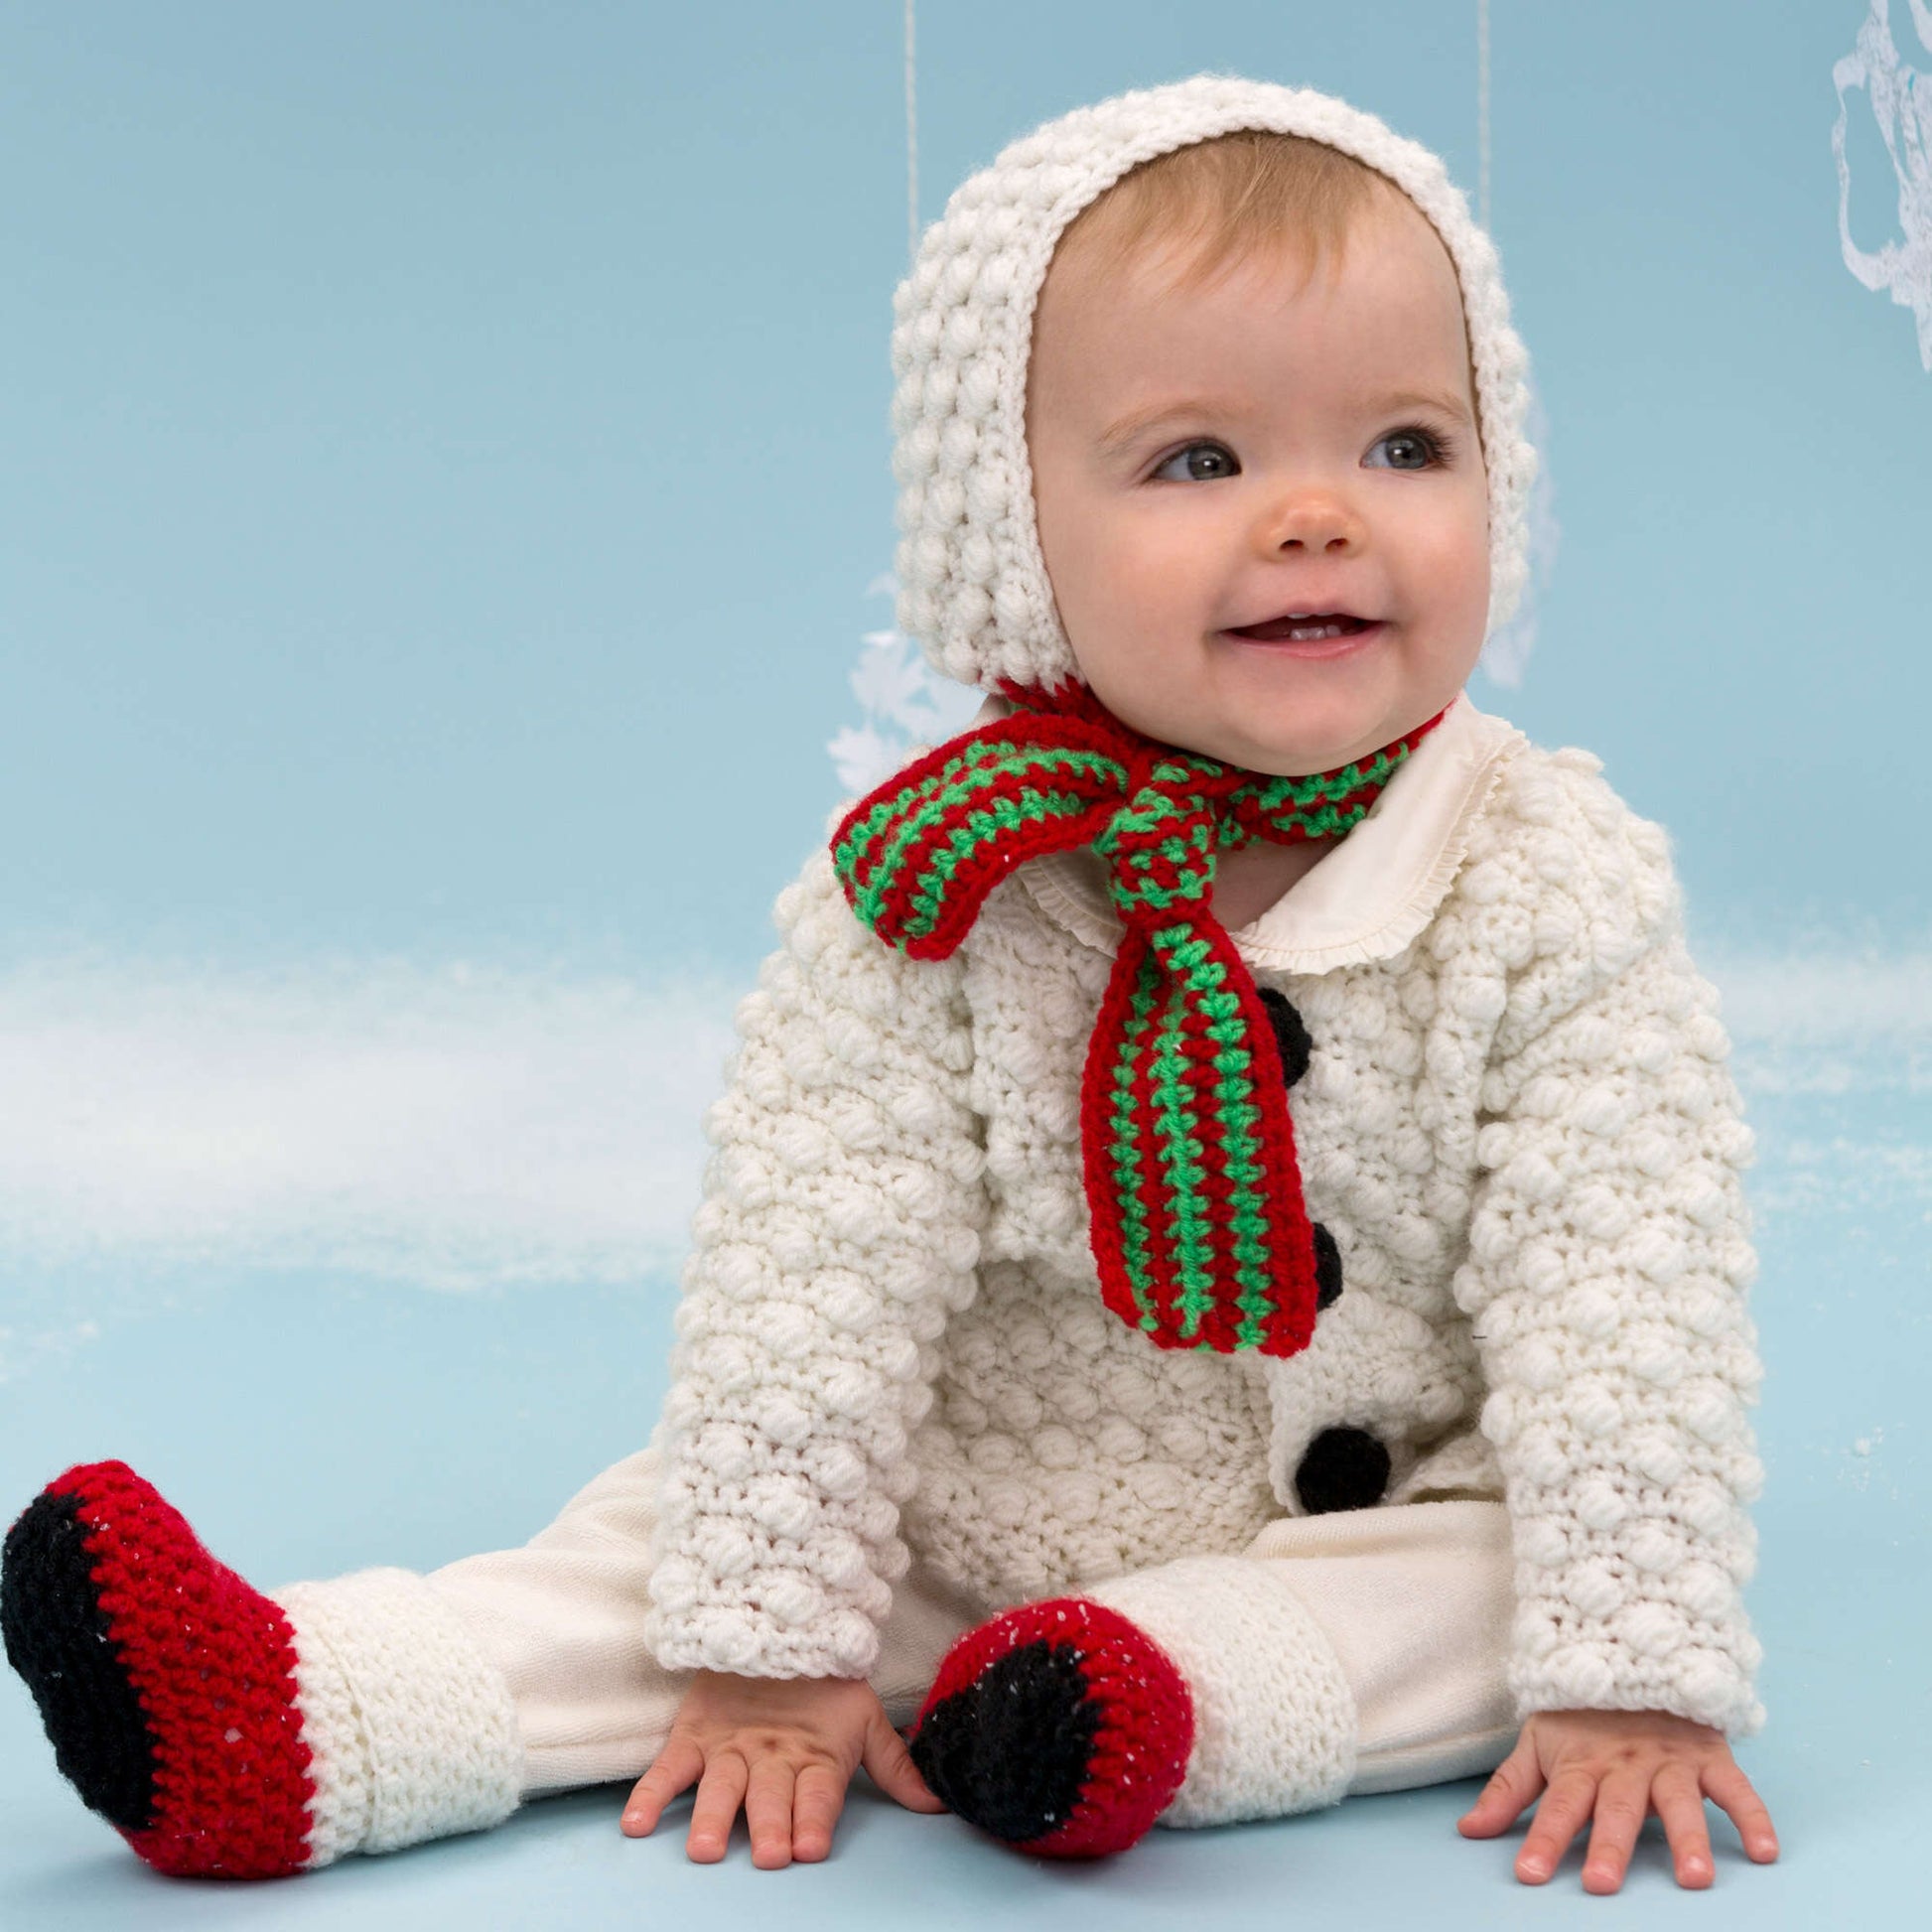 Free Red Heart Snowman Cutie Baby Set Crochet Pattern